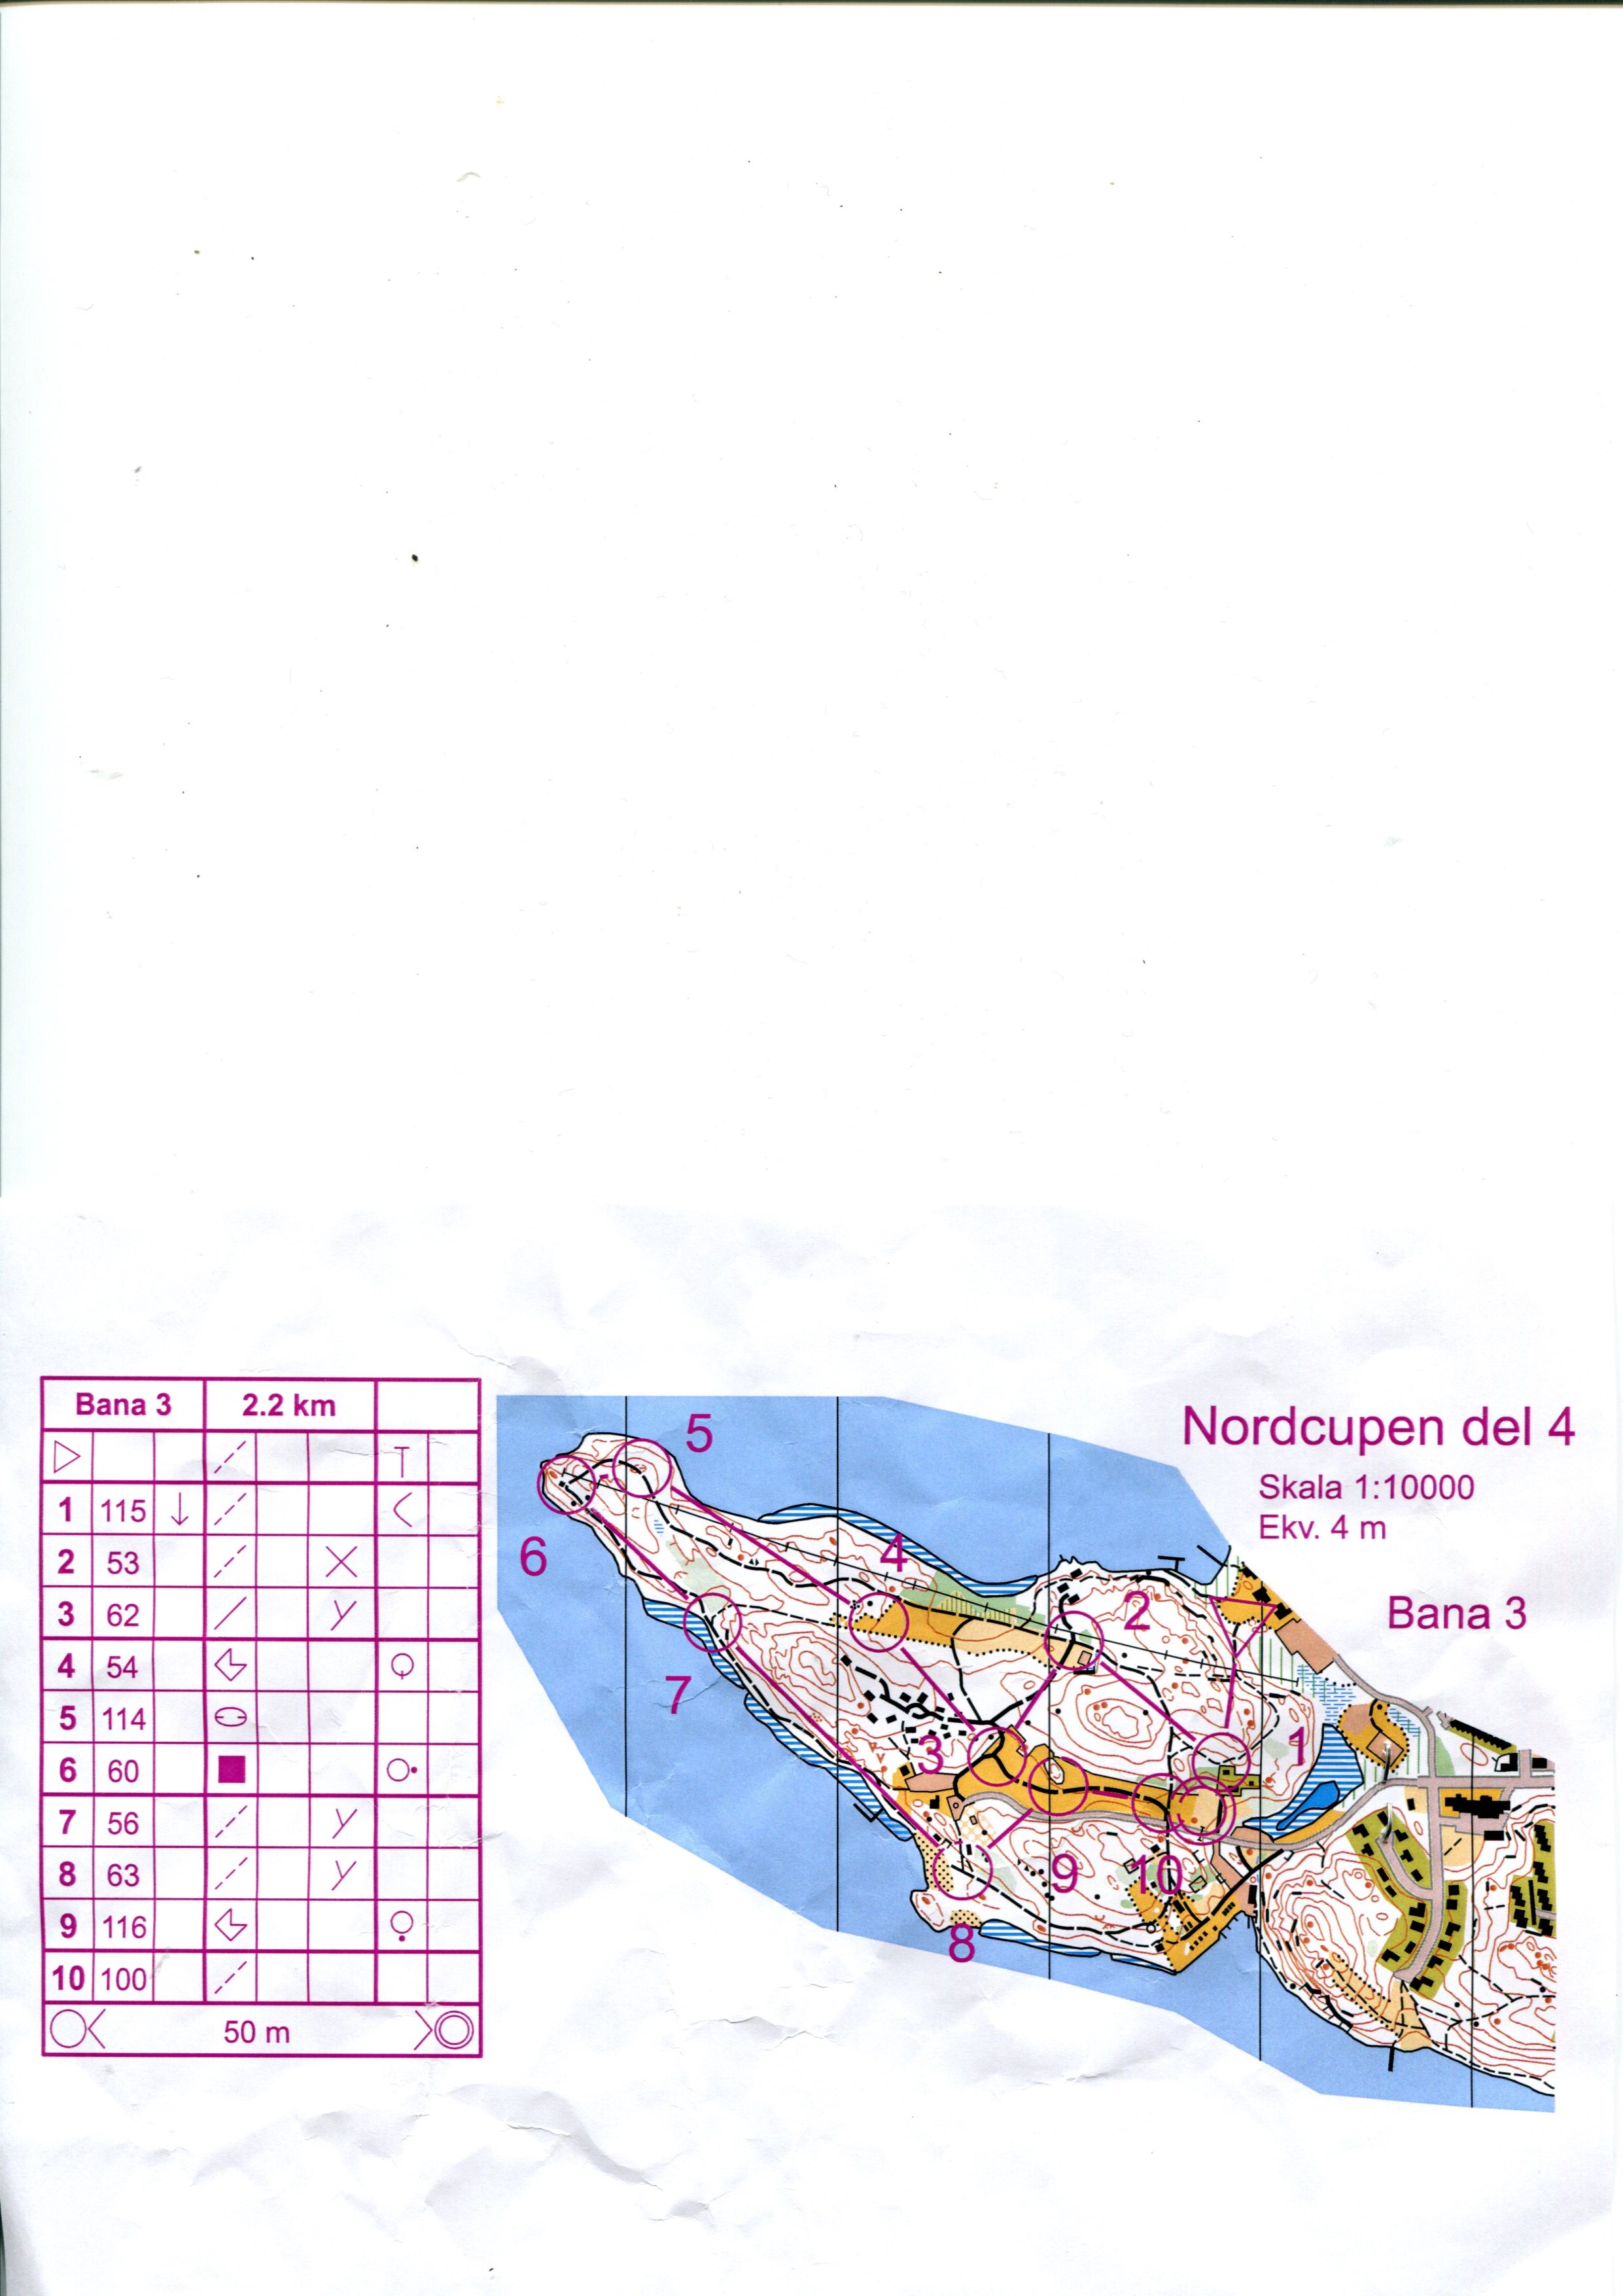 Nordcupen deltävling 4 (20.11.2015)